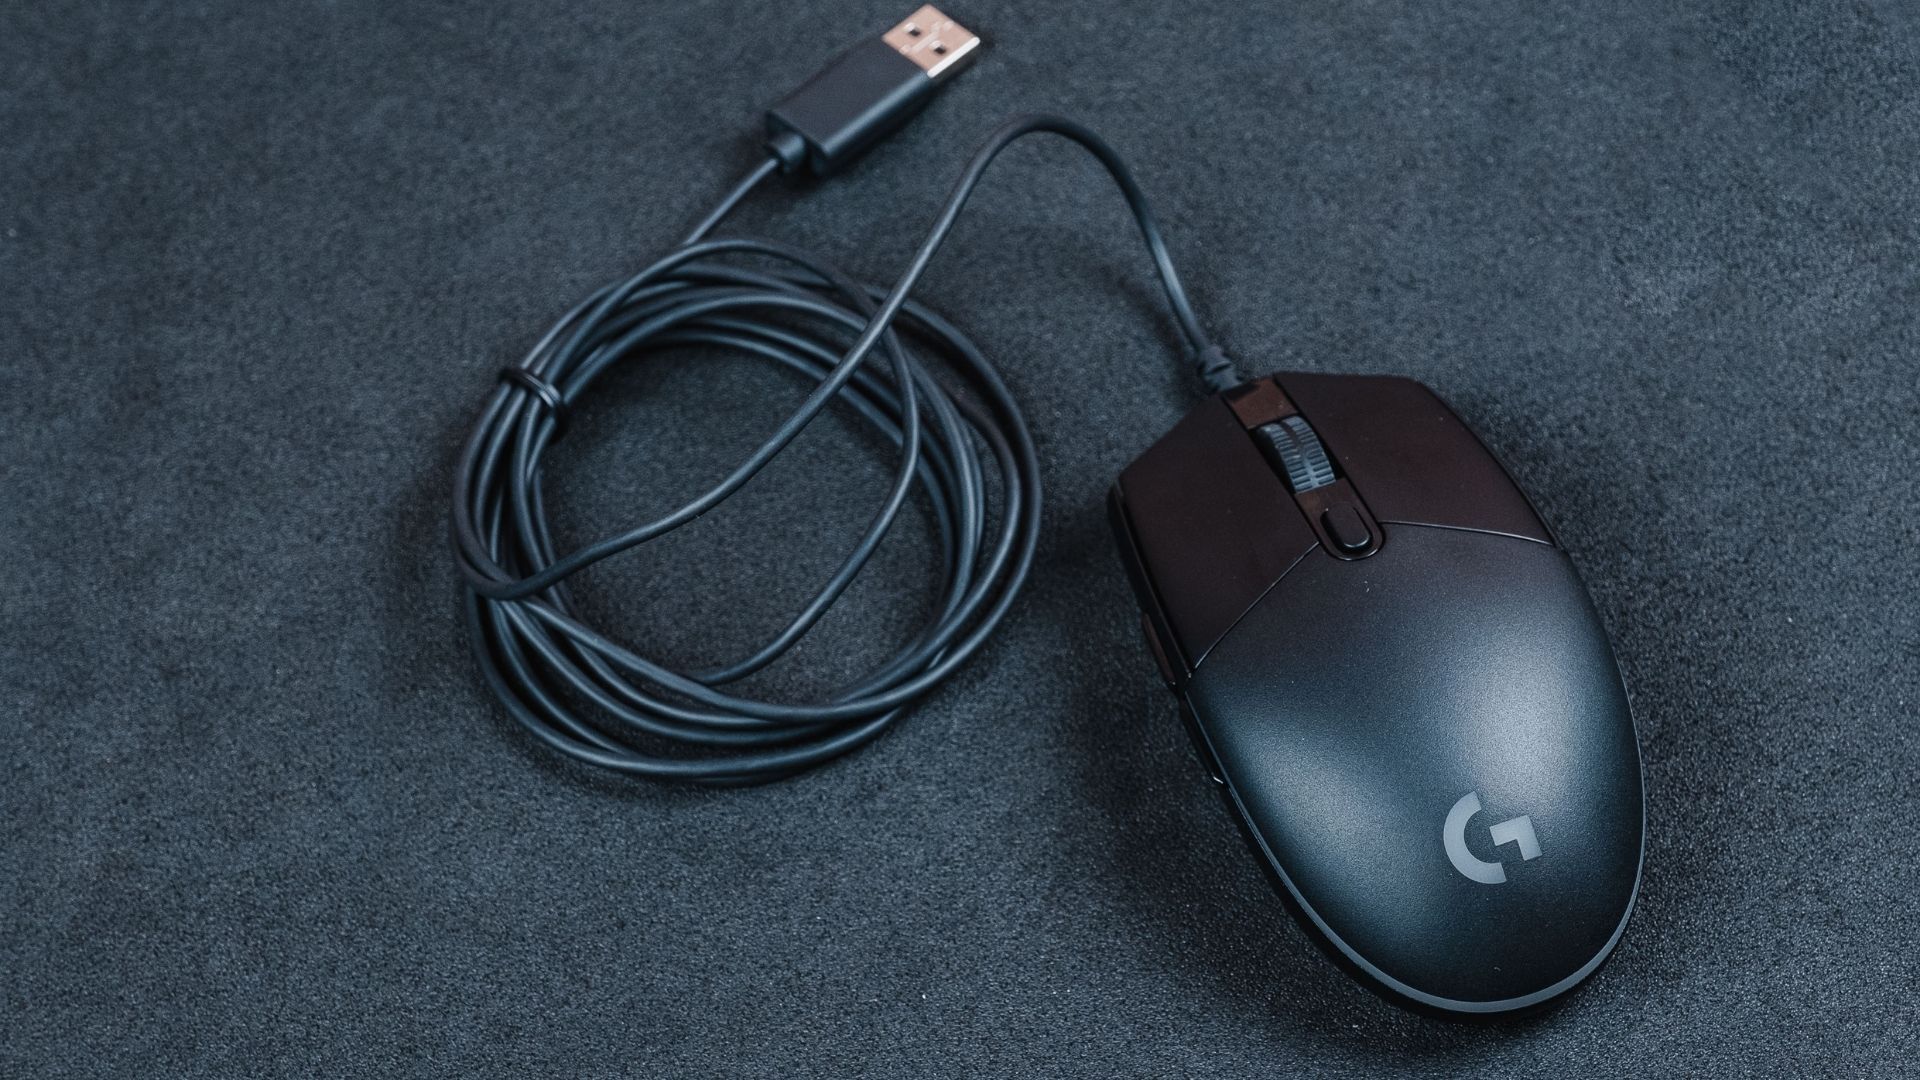 O Logitech G203 é um mouse com fio e seu cabo tem 2m